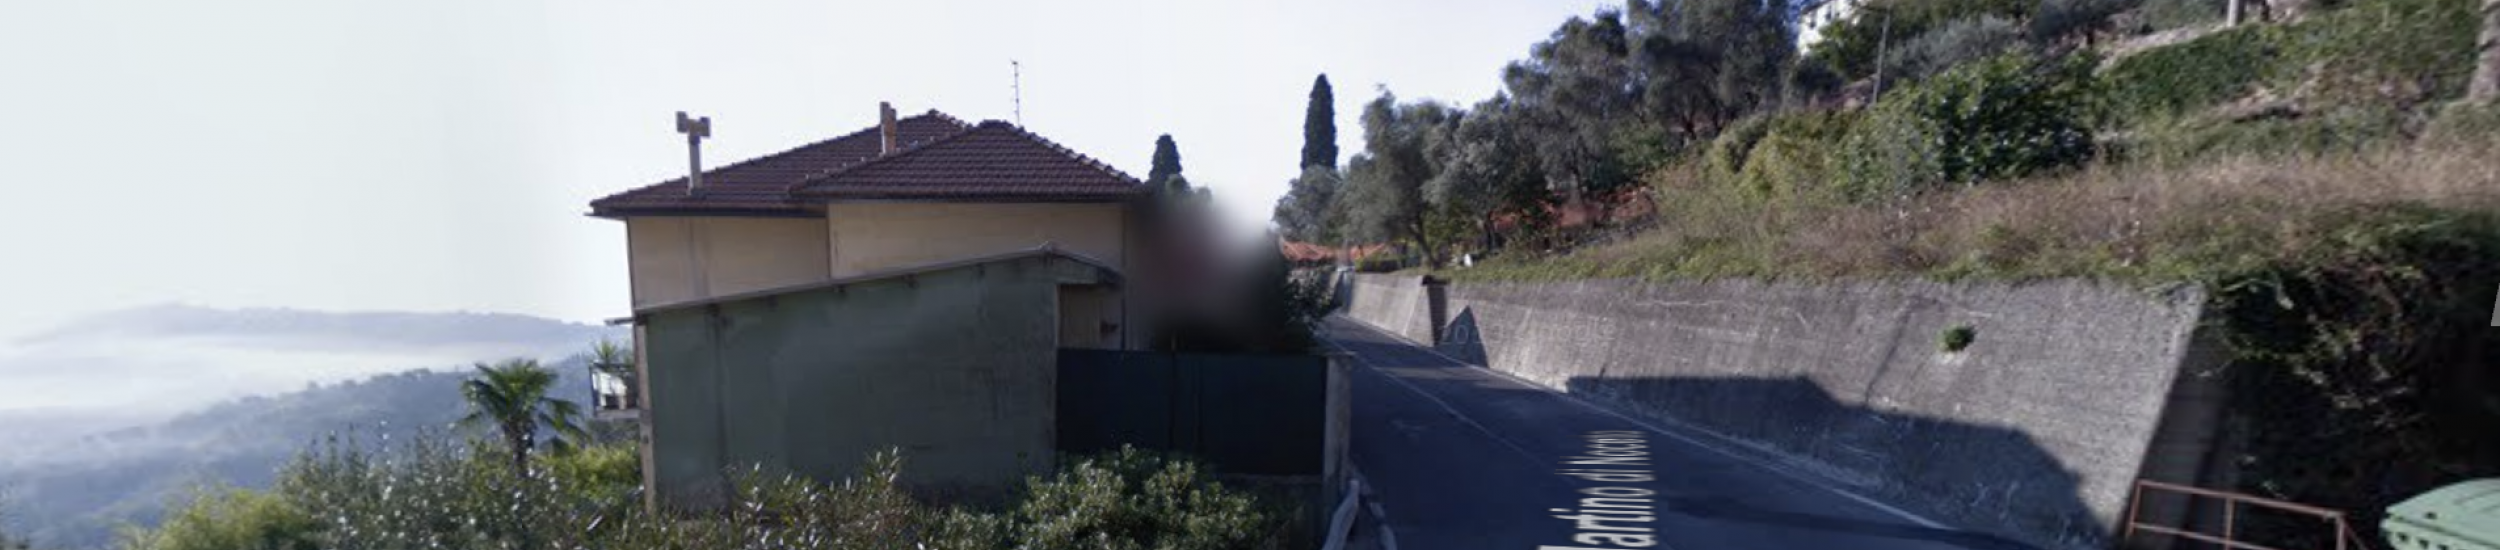 News: Consolidamento dei cigli stradali sulla SP n. 31 di San Martino di Noceto